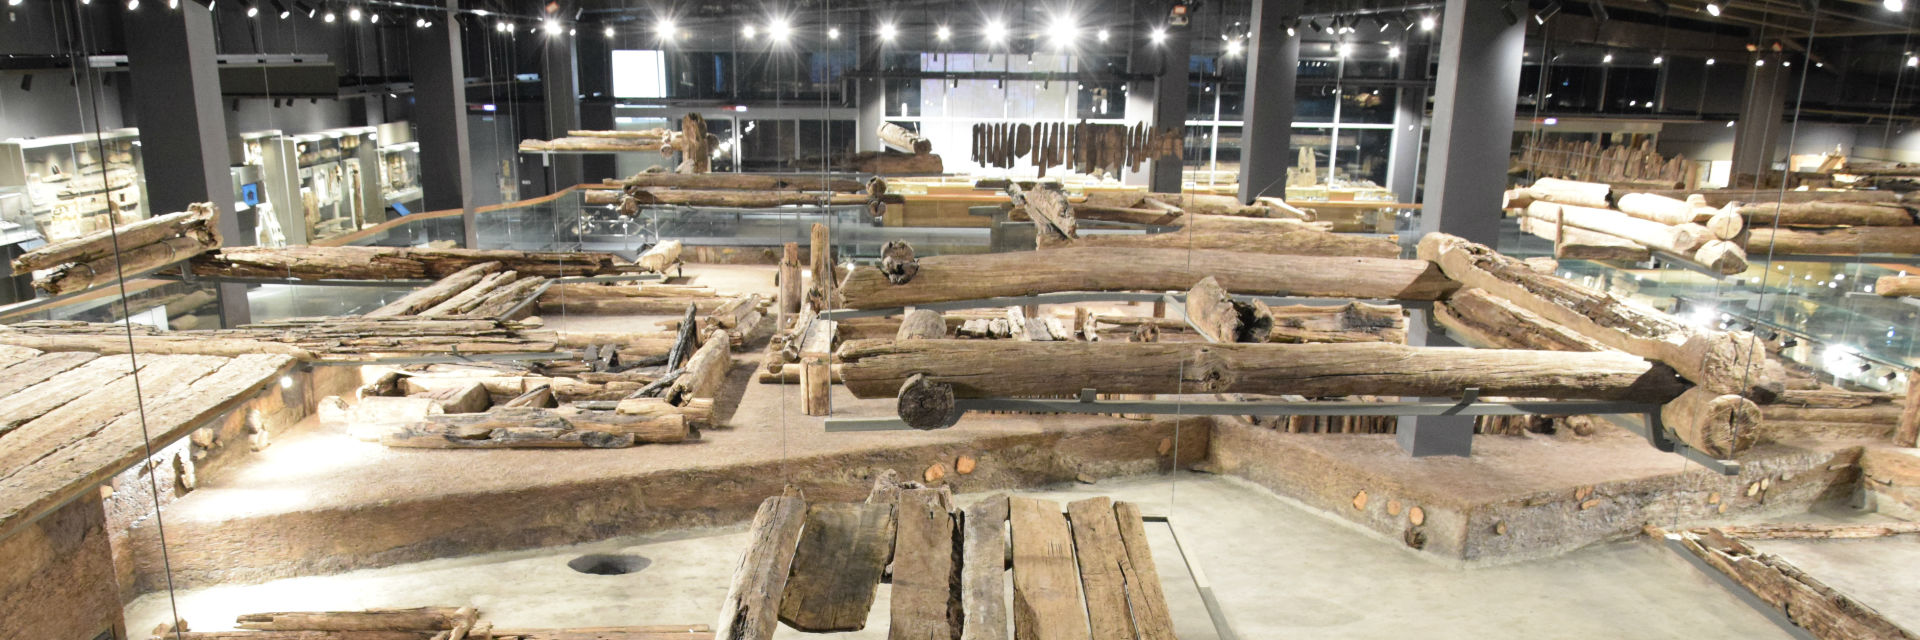 Музей археологии дерева в Cвияжске